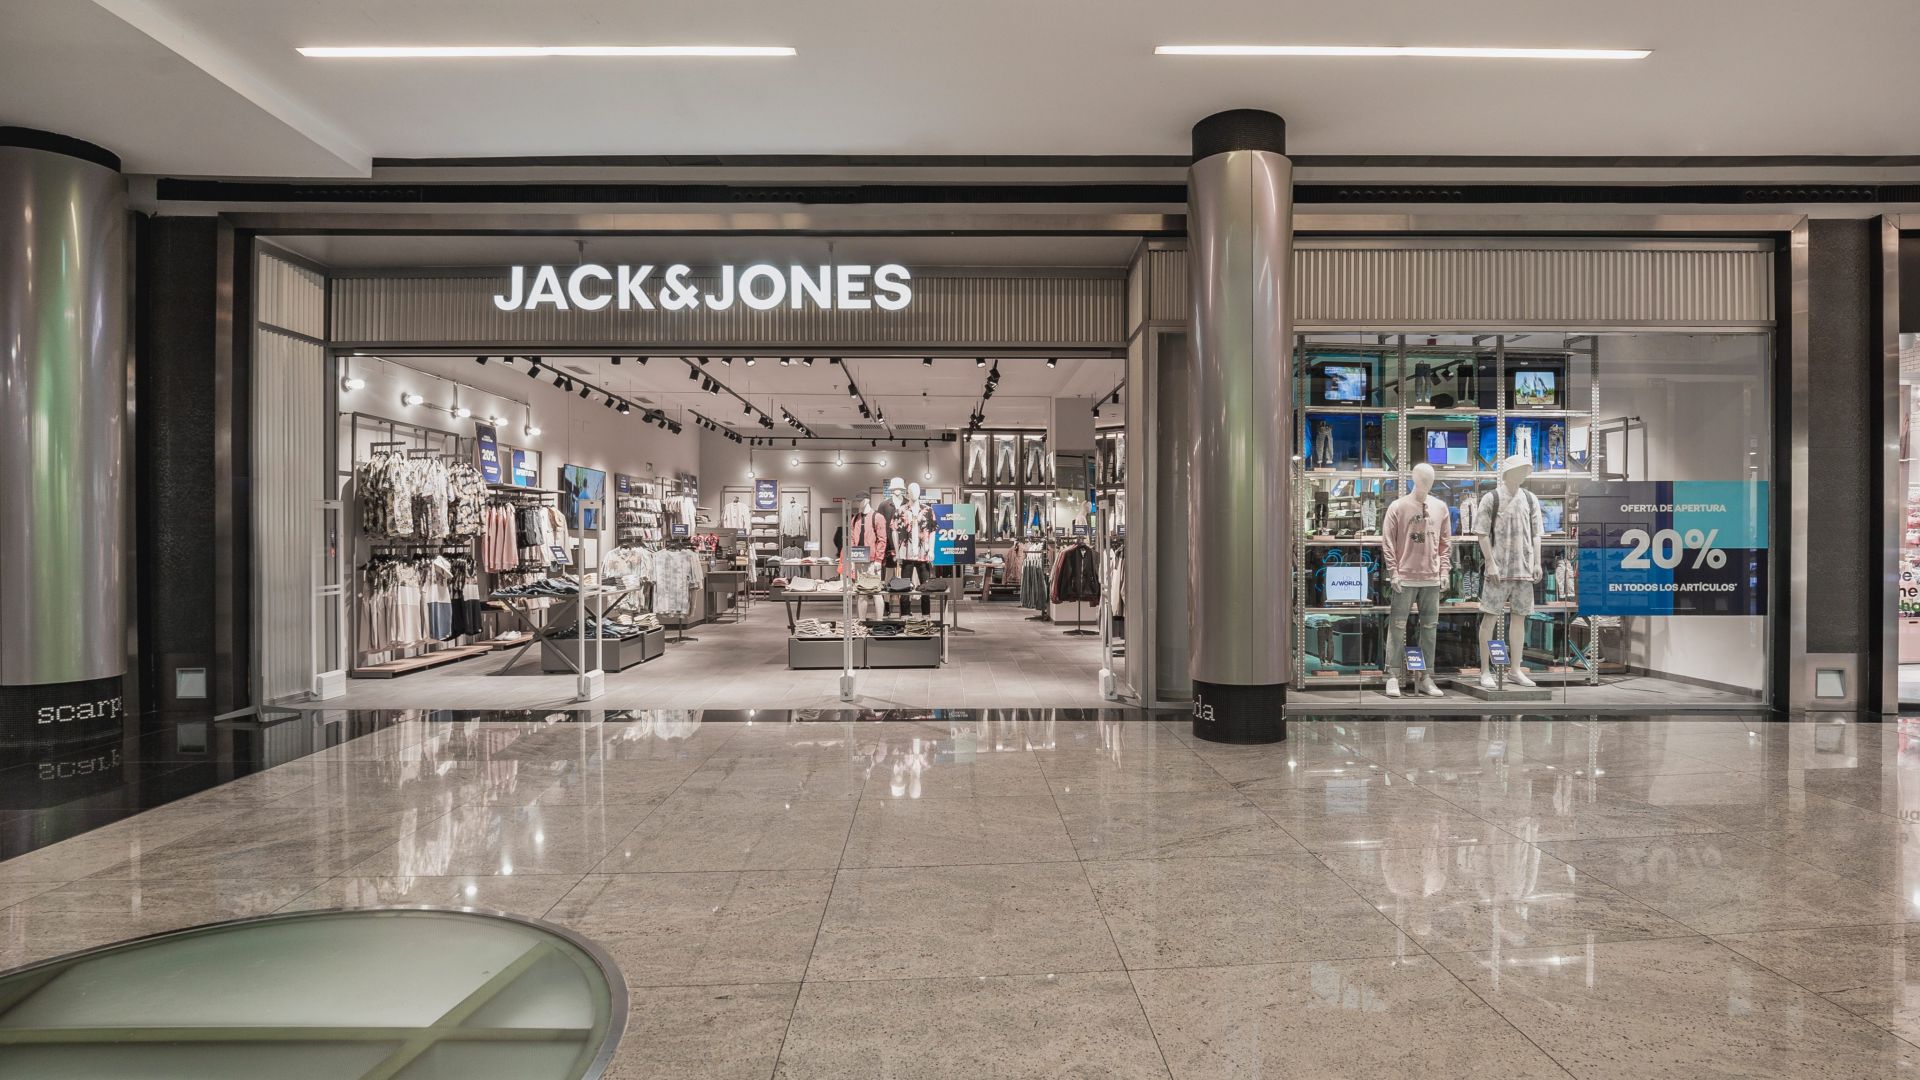 Jack & Jones inaugura Marineda City con más espacio y concepto